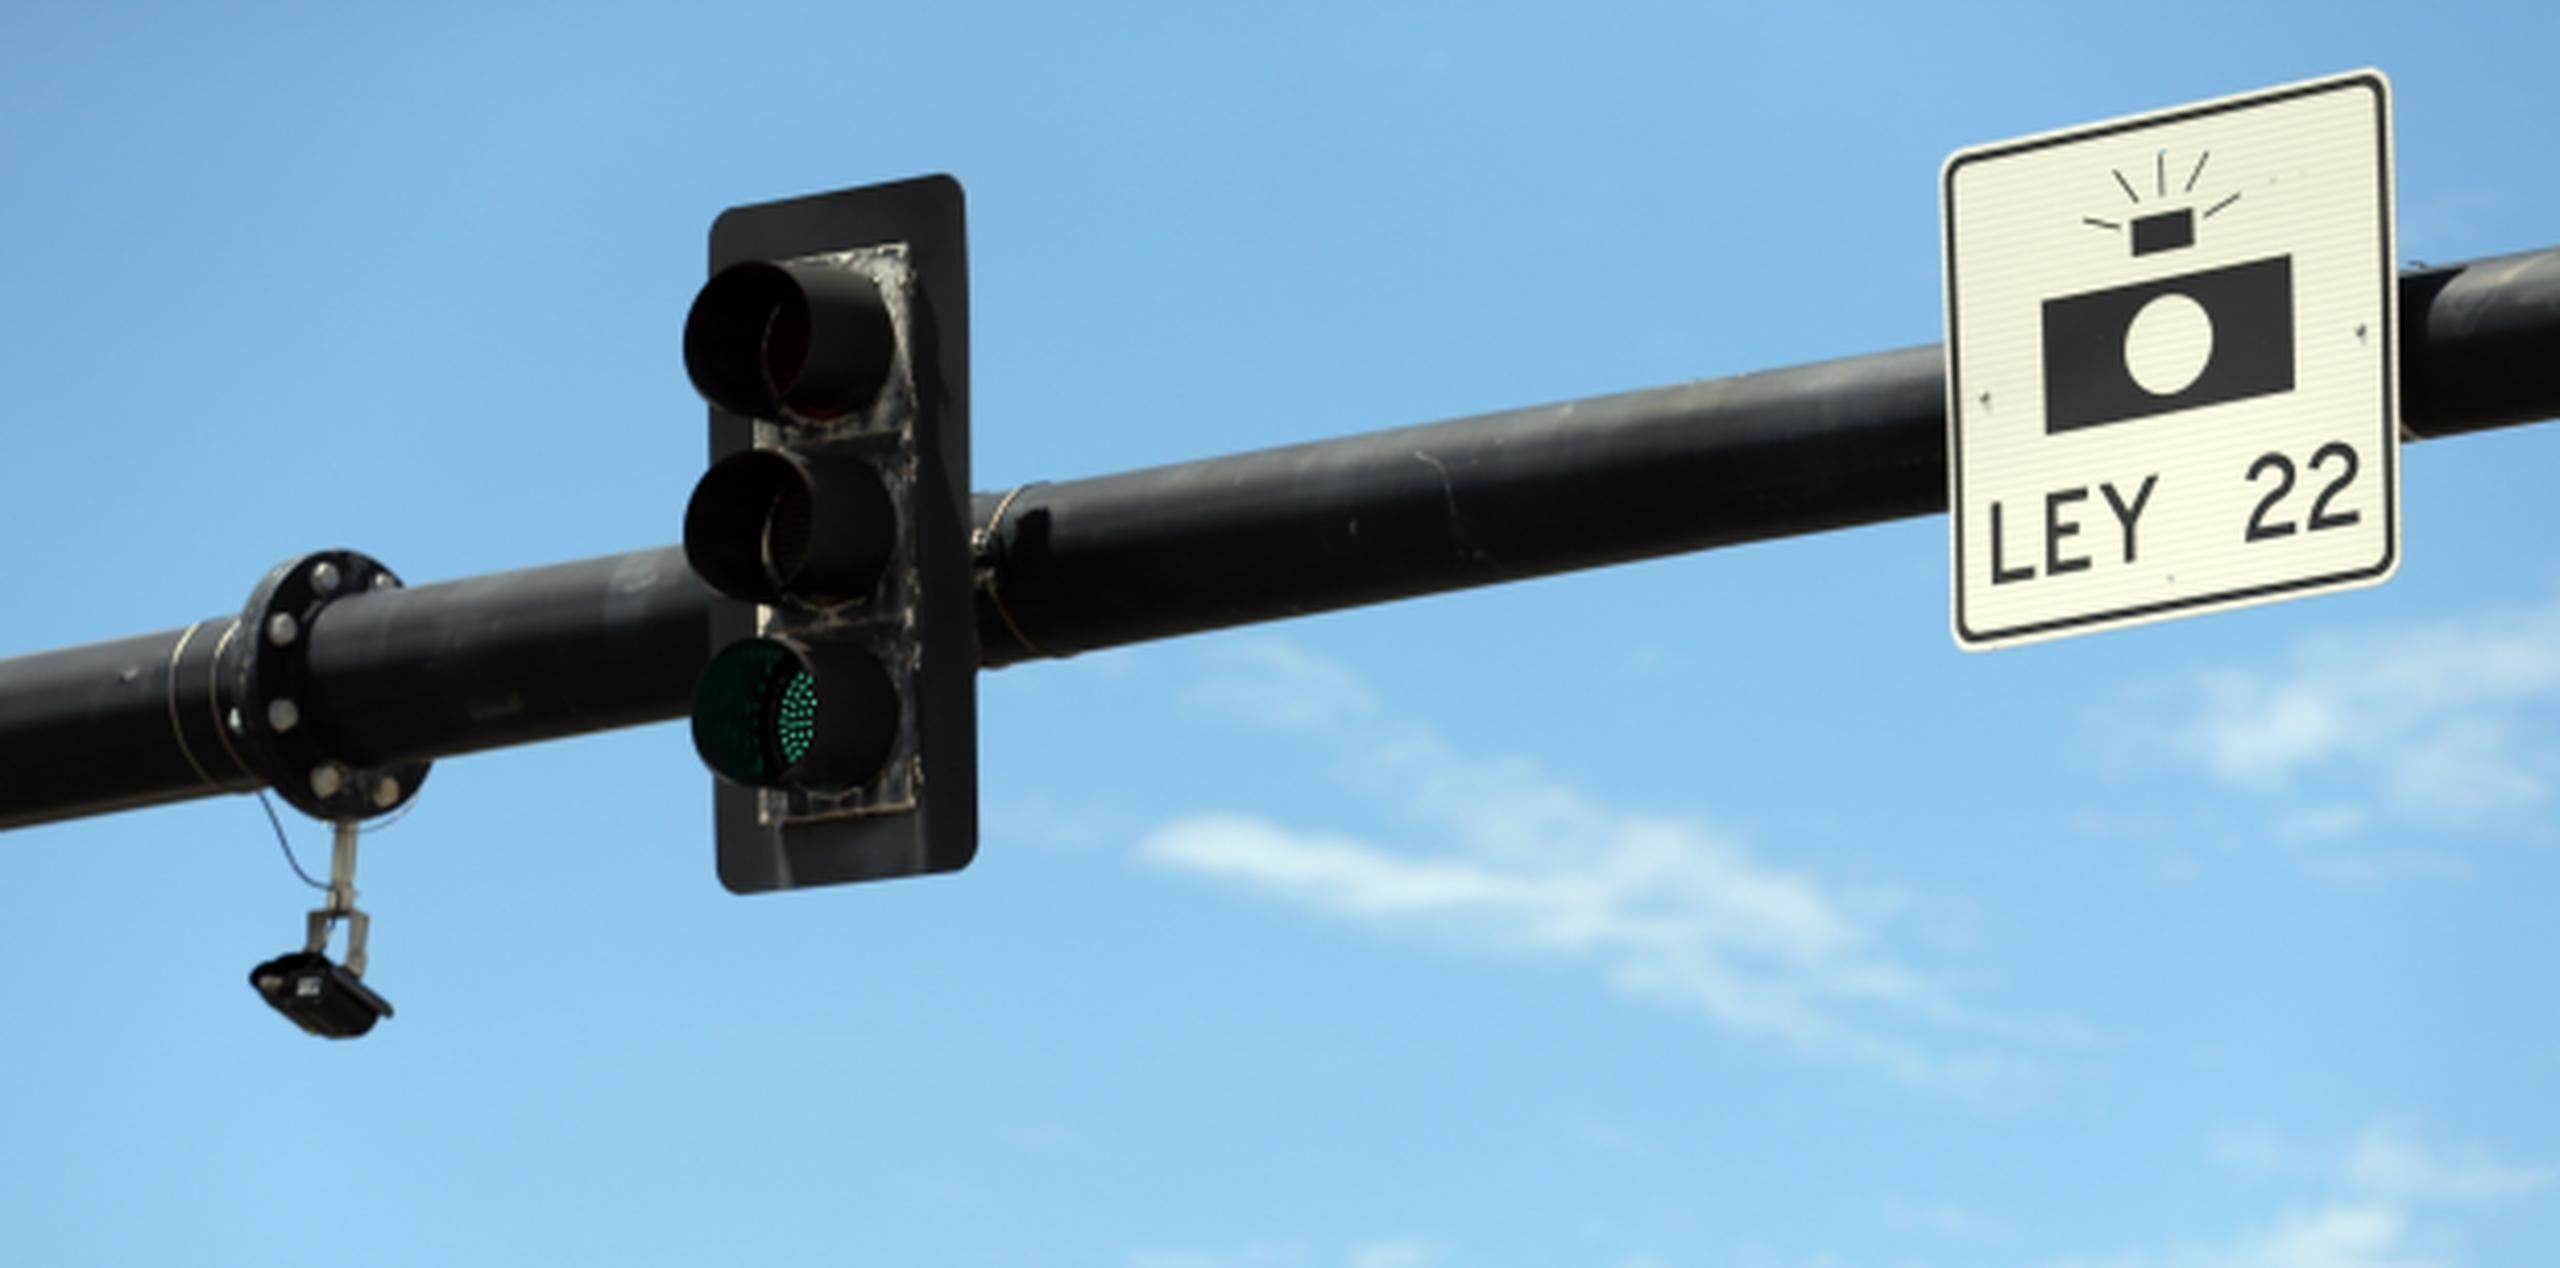 El sistema Simone, diseñado para detectar violaciones de ley como exceso de velocidad y rebasar la luz roja, está ubicado en el puente Dos Hermanos en el Condado (juan.martinez@gfrmedia.com)